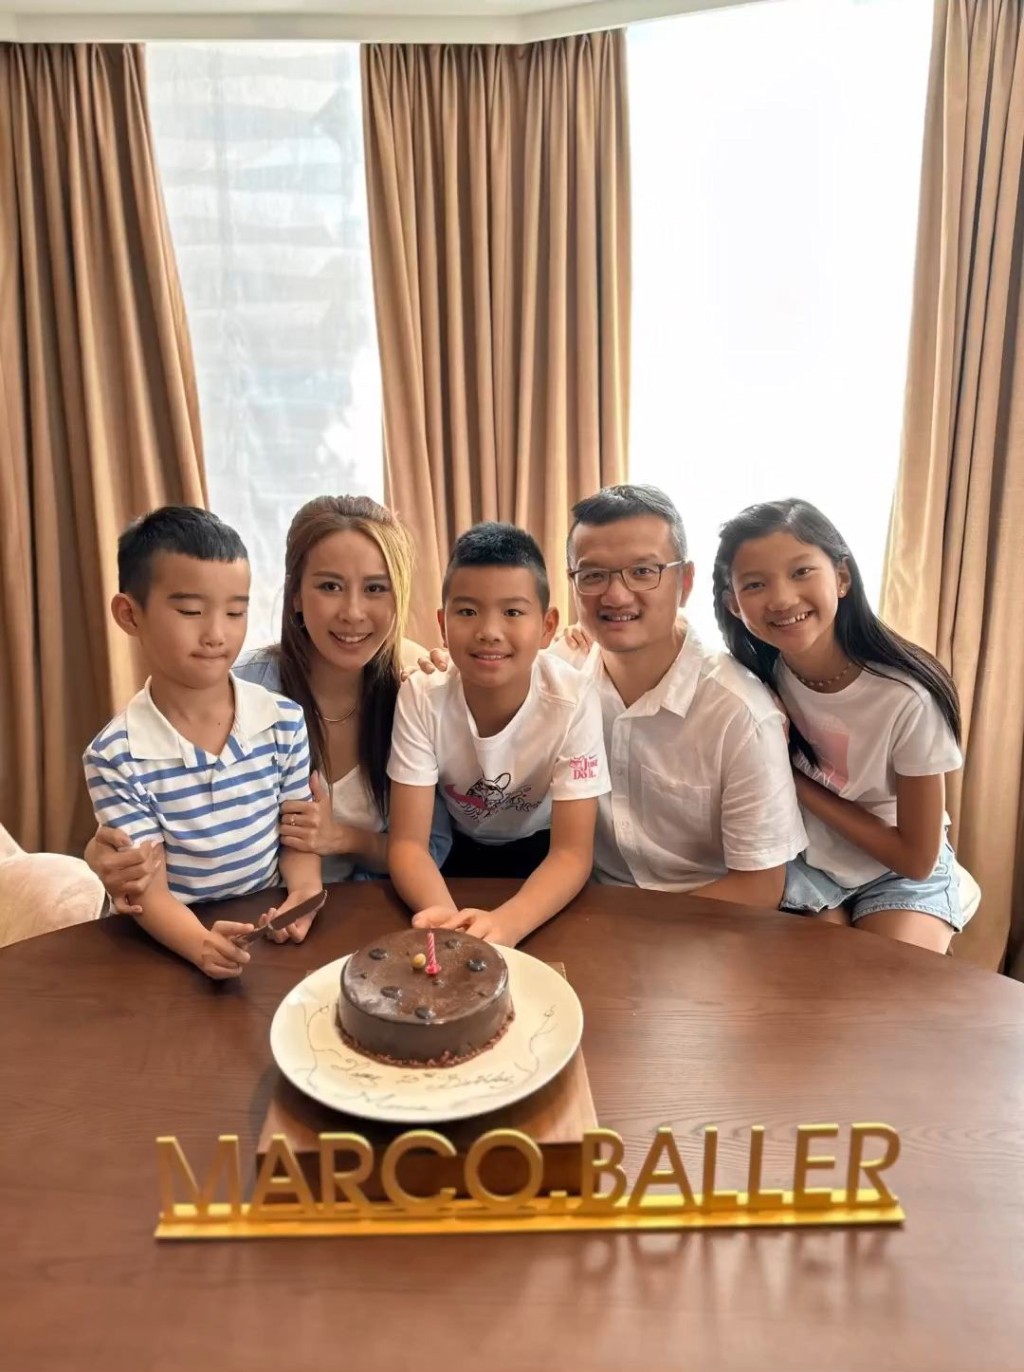 一家人為Marco慶祝生日。